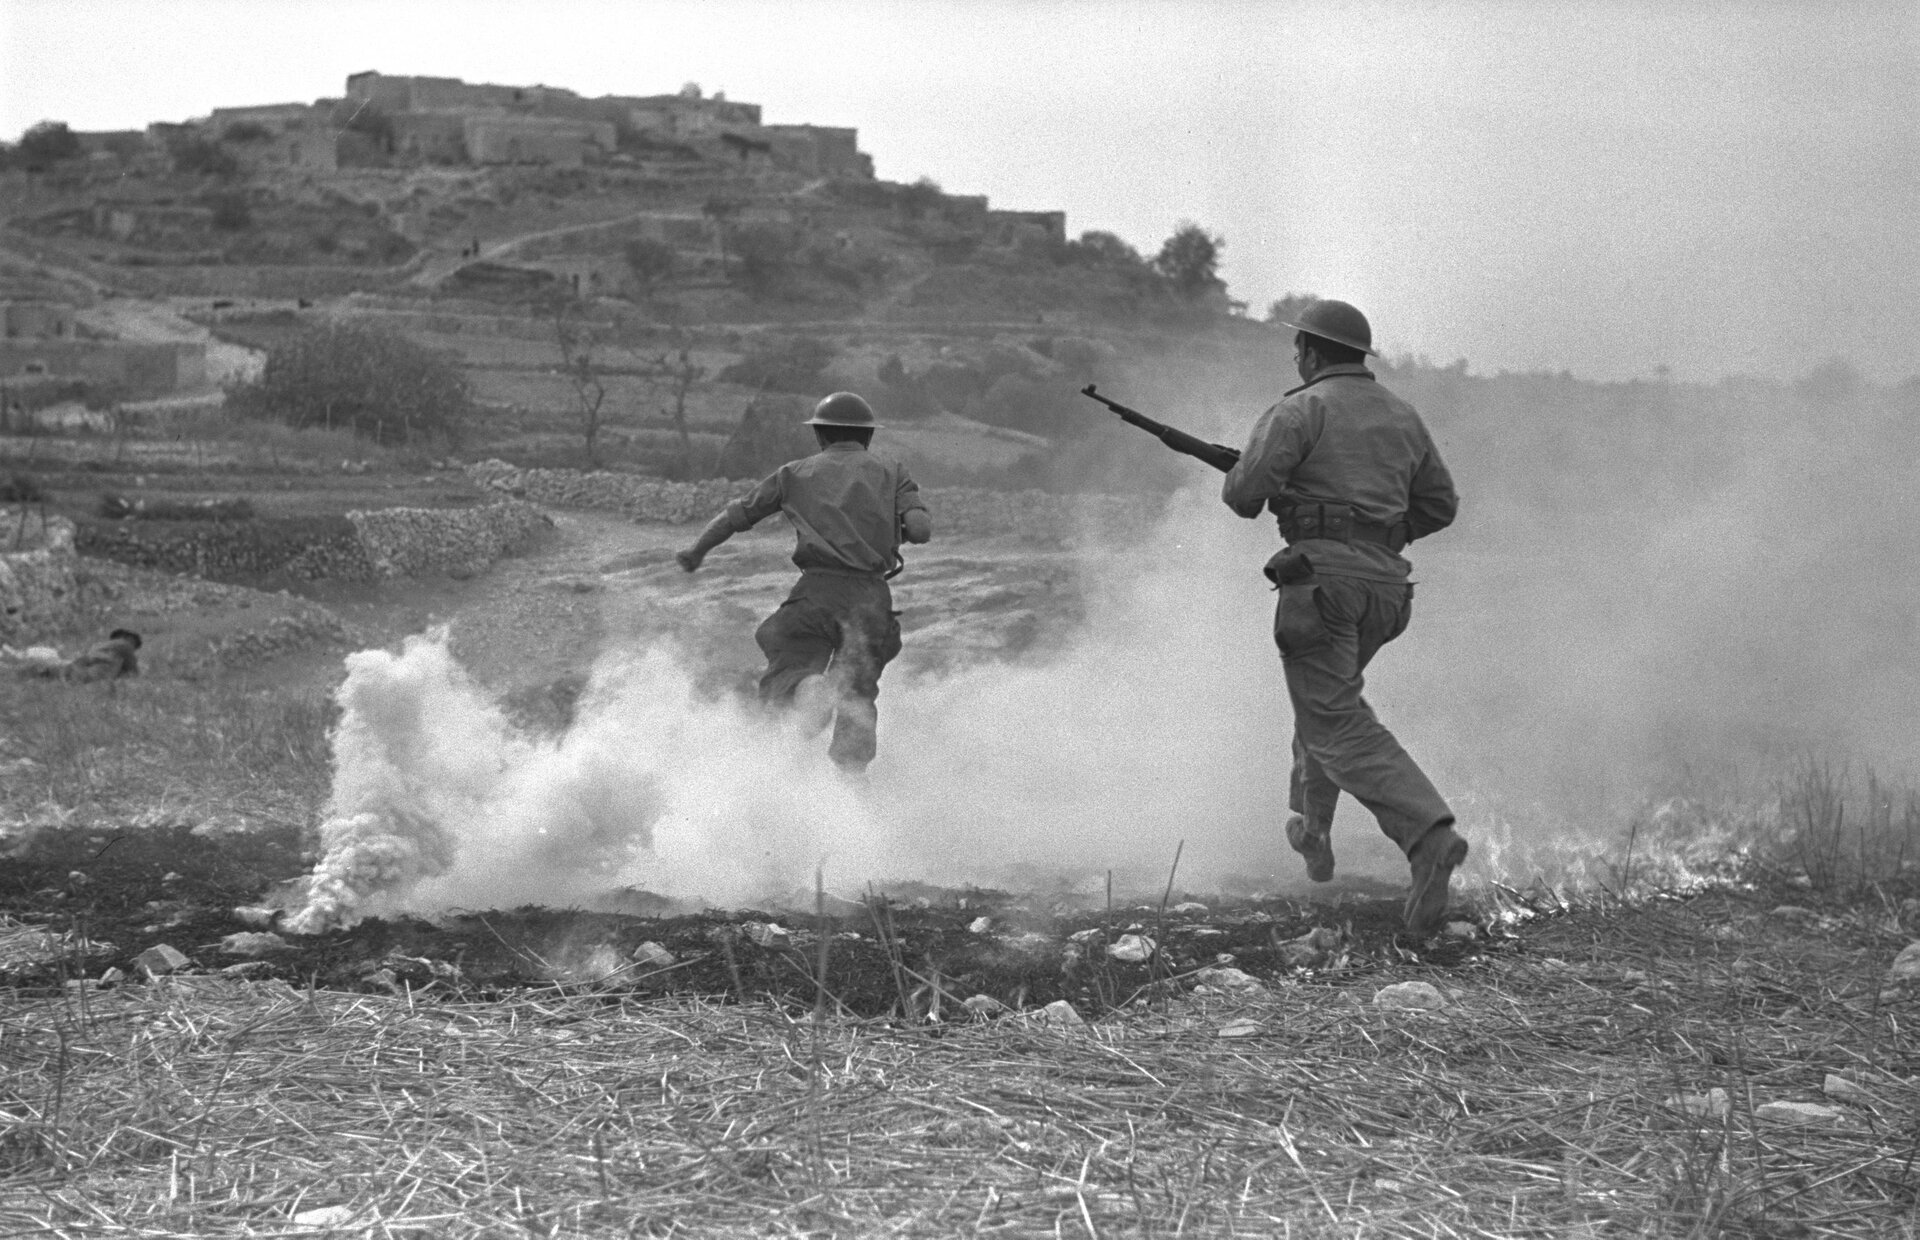 Ilustracja przedstawia dwóch biegnących mężczyzn w hełmach oraz strojach wojskowych. Jeden z nich trzyma karabin. Obok nich na ziemi leży granat, z którego wydobywa się jasny dym. W tle znajdują się budynki skały i droga. Zdjęcie jest czarno-białe.